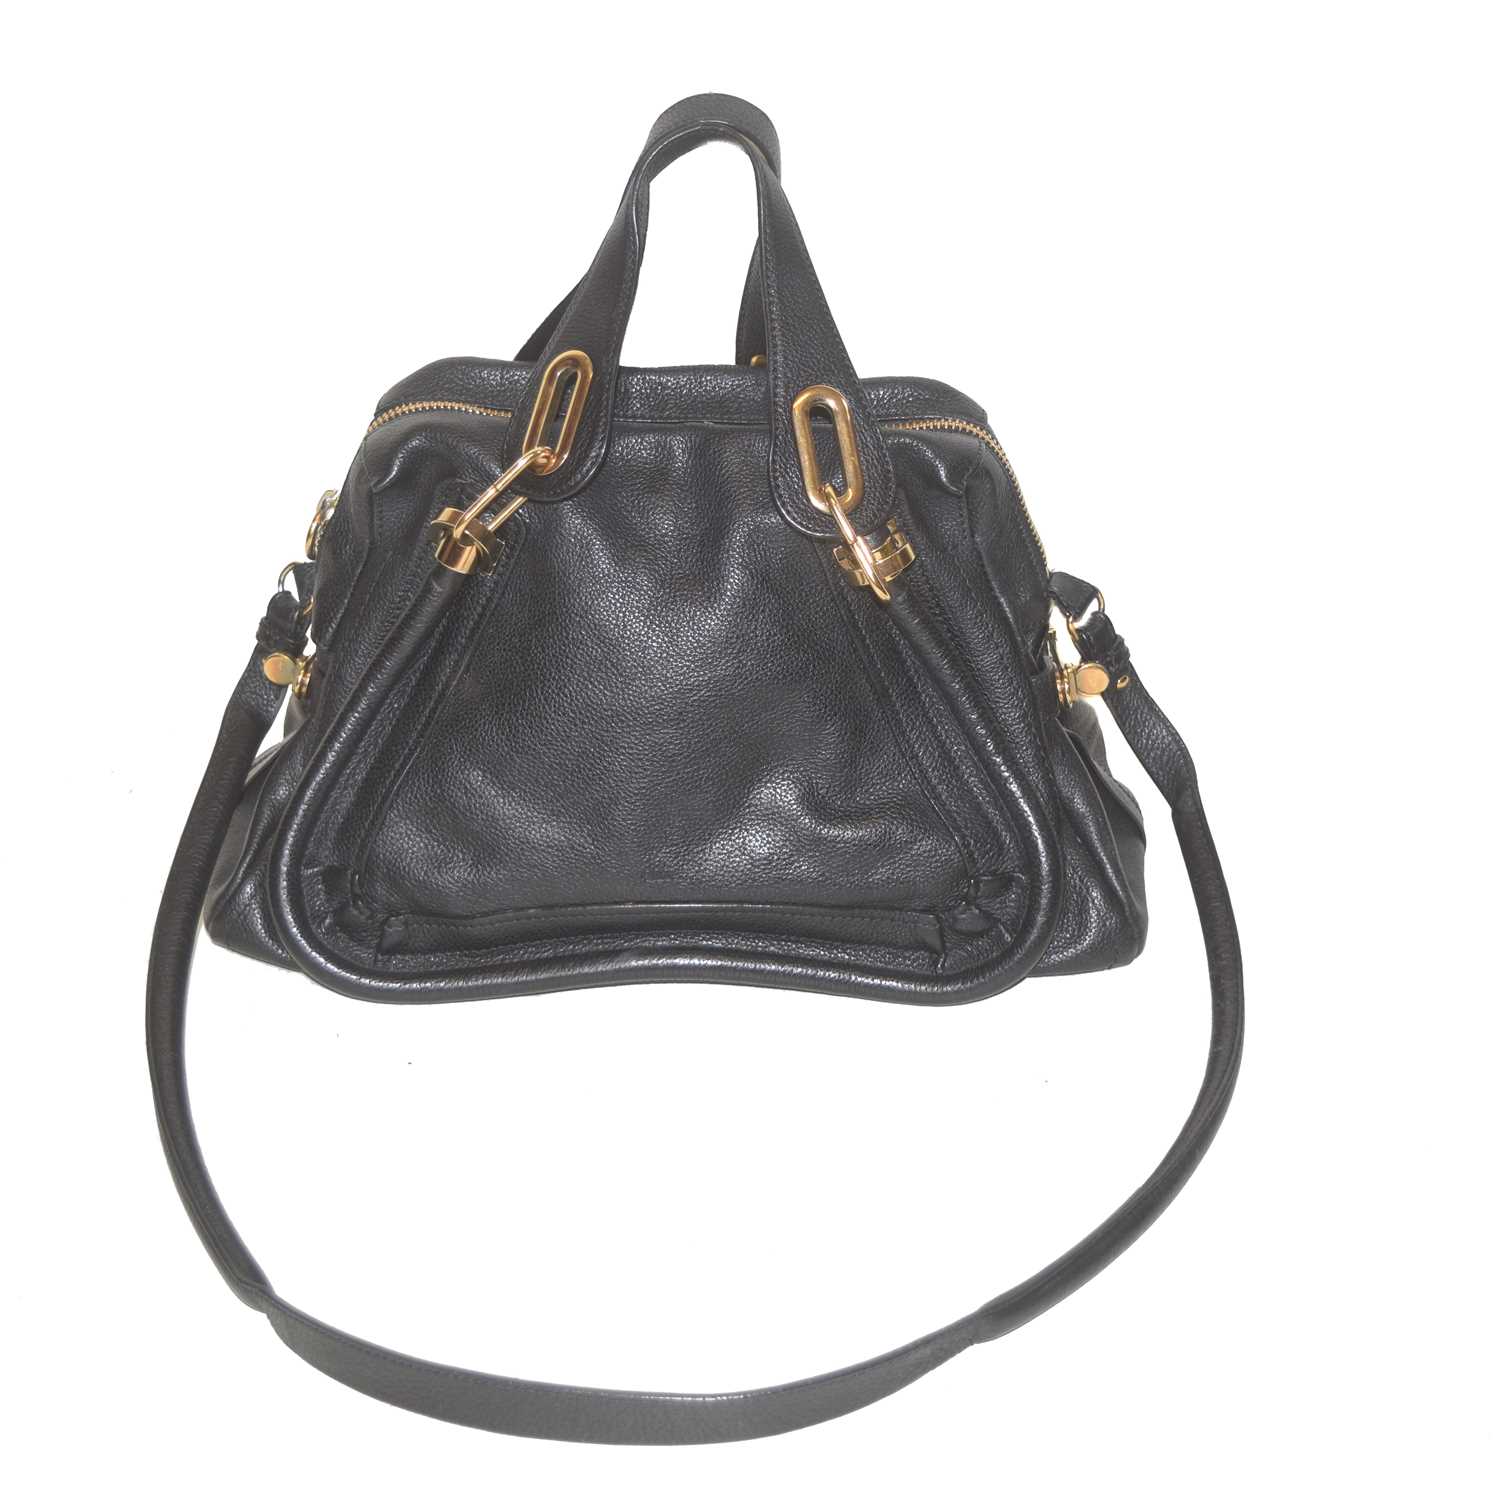 Lot 86 - A Chloe Paraty Small Handbag